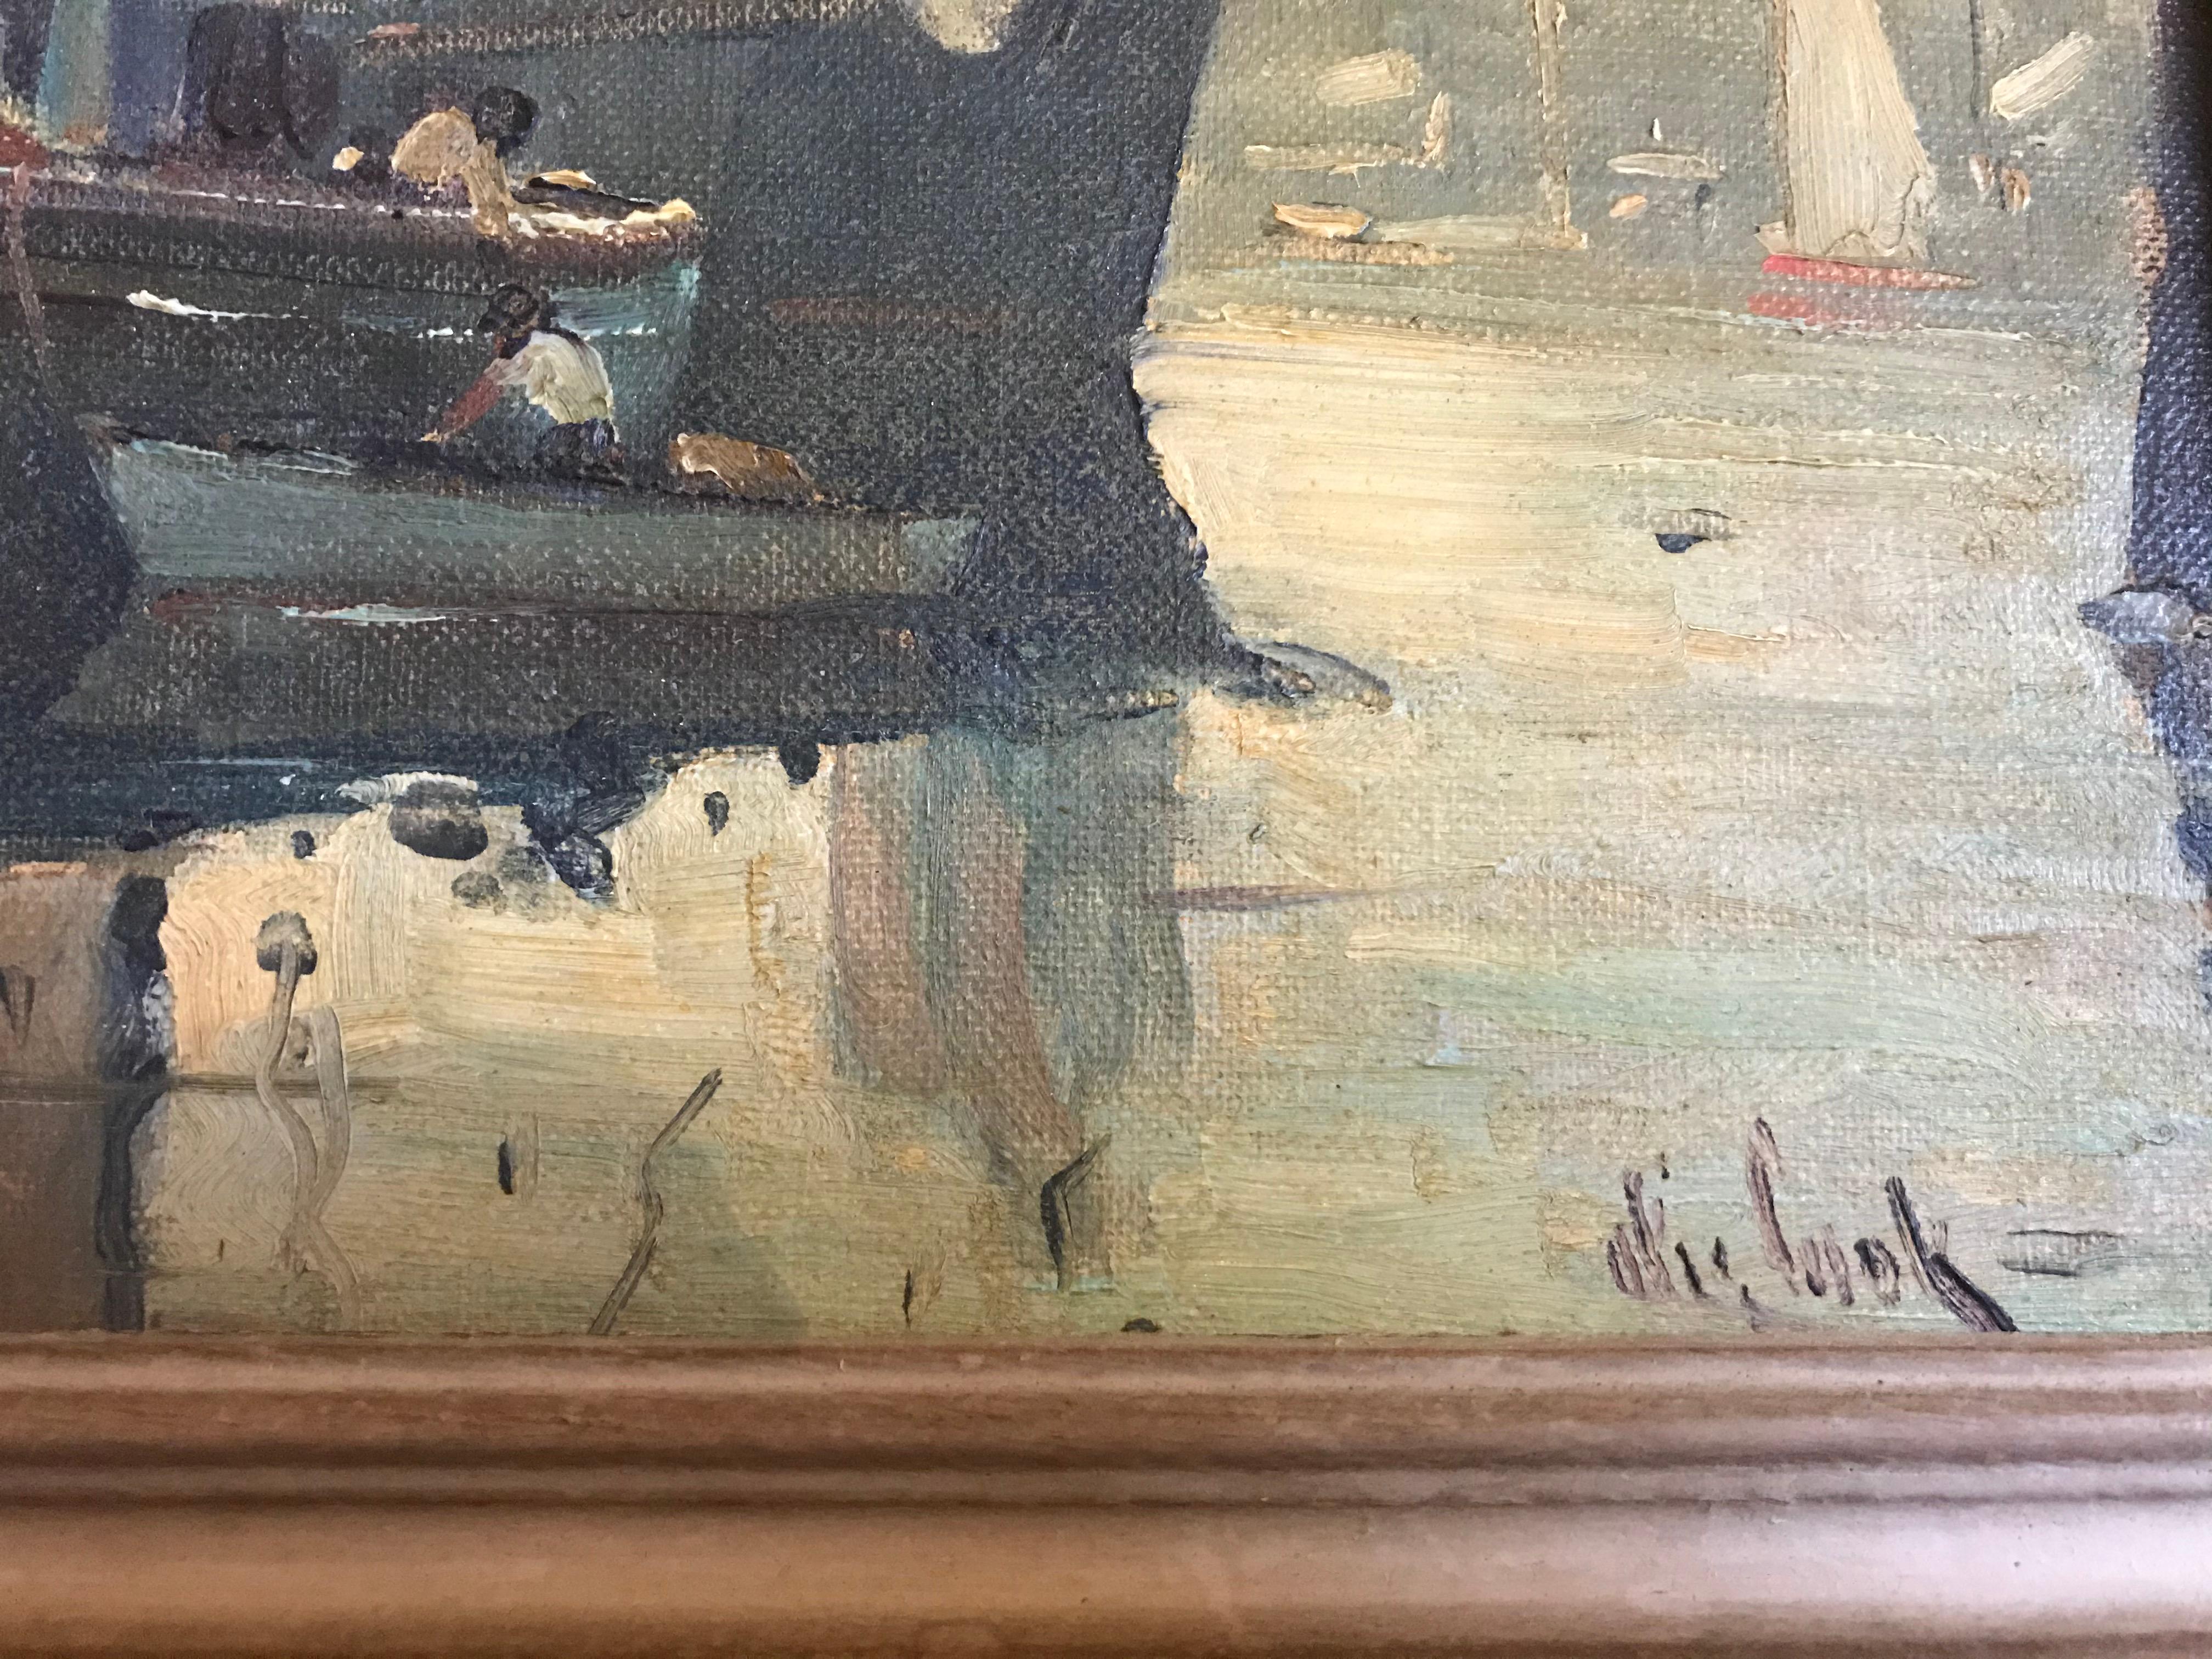 Une charmante scène de port réalisée par le célèbre peintre du Massachusetts, Otis Pierce Cook, dont la cote est très élevée. Il est surtout connu pour ces scènes nautiques et portuaires, ce qui est très typique de son travail. J'ai inclus ses deux